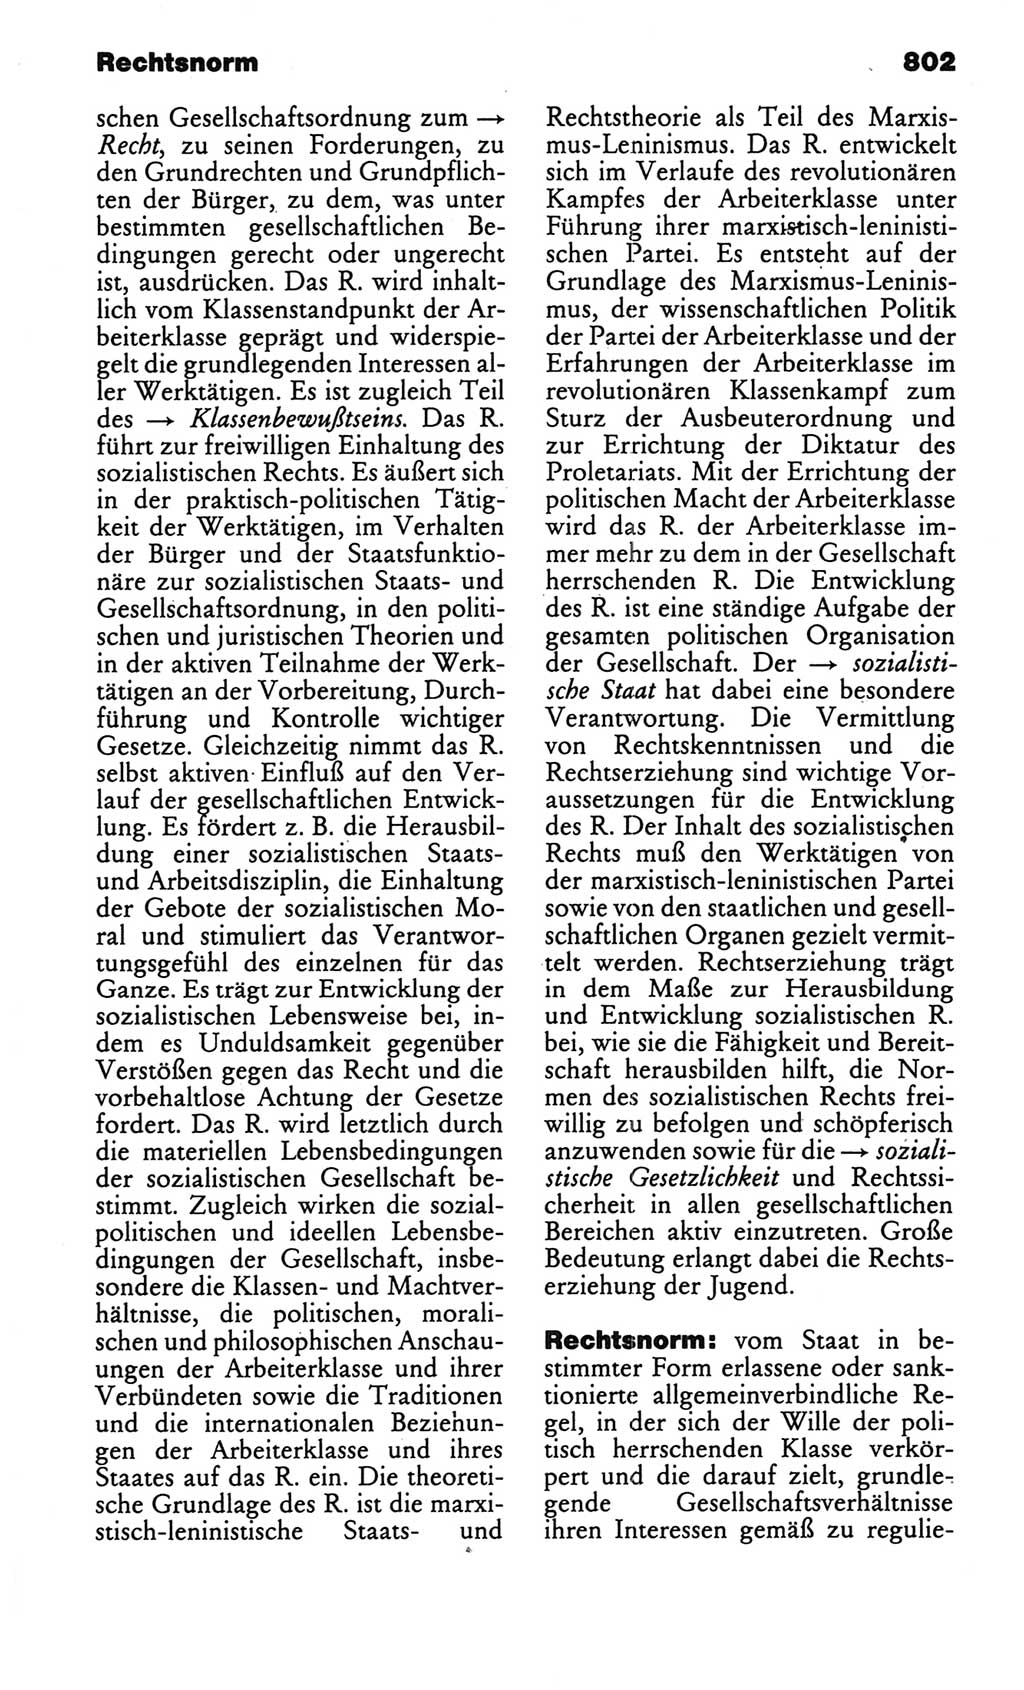 Kleines politisches Wörterbuch [Deutsche Demokratische Republik (DDR)] 1986, Seite 802 (Kl. pol. Wb. DDR 1986, S. 802)